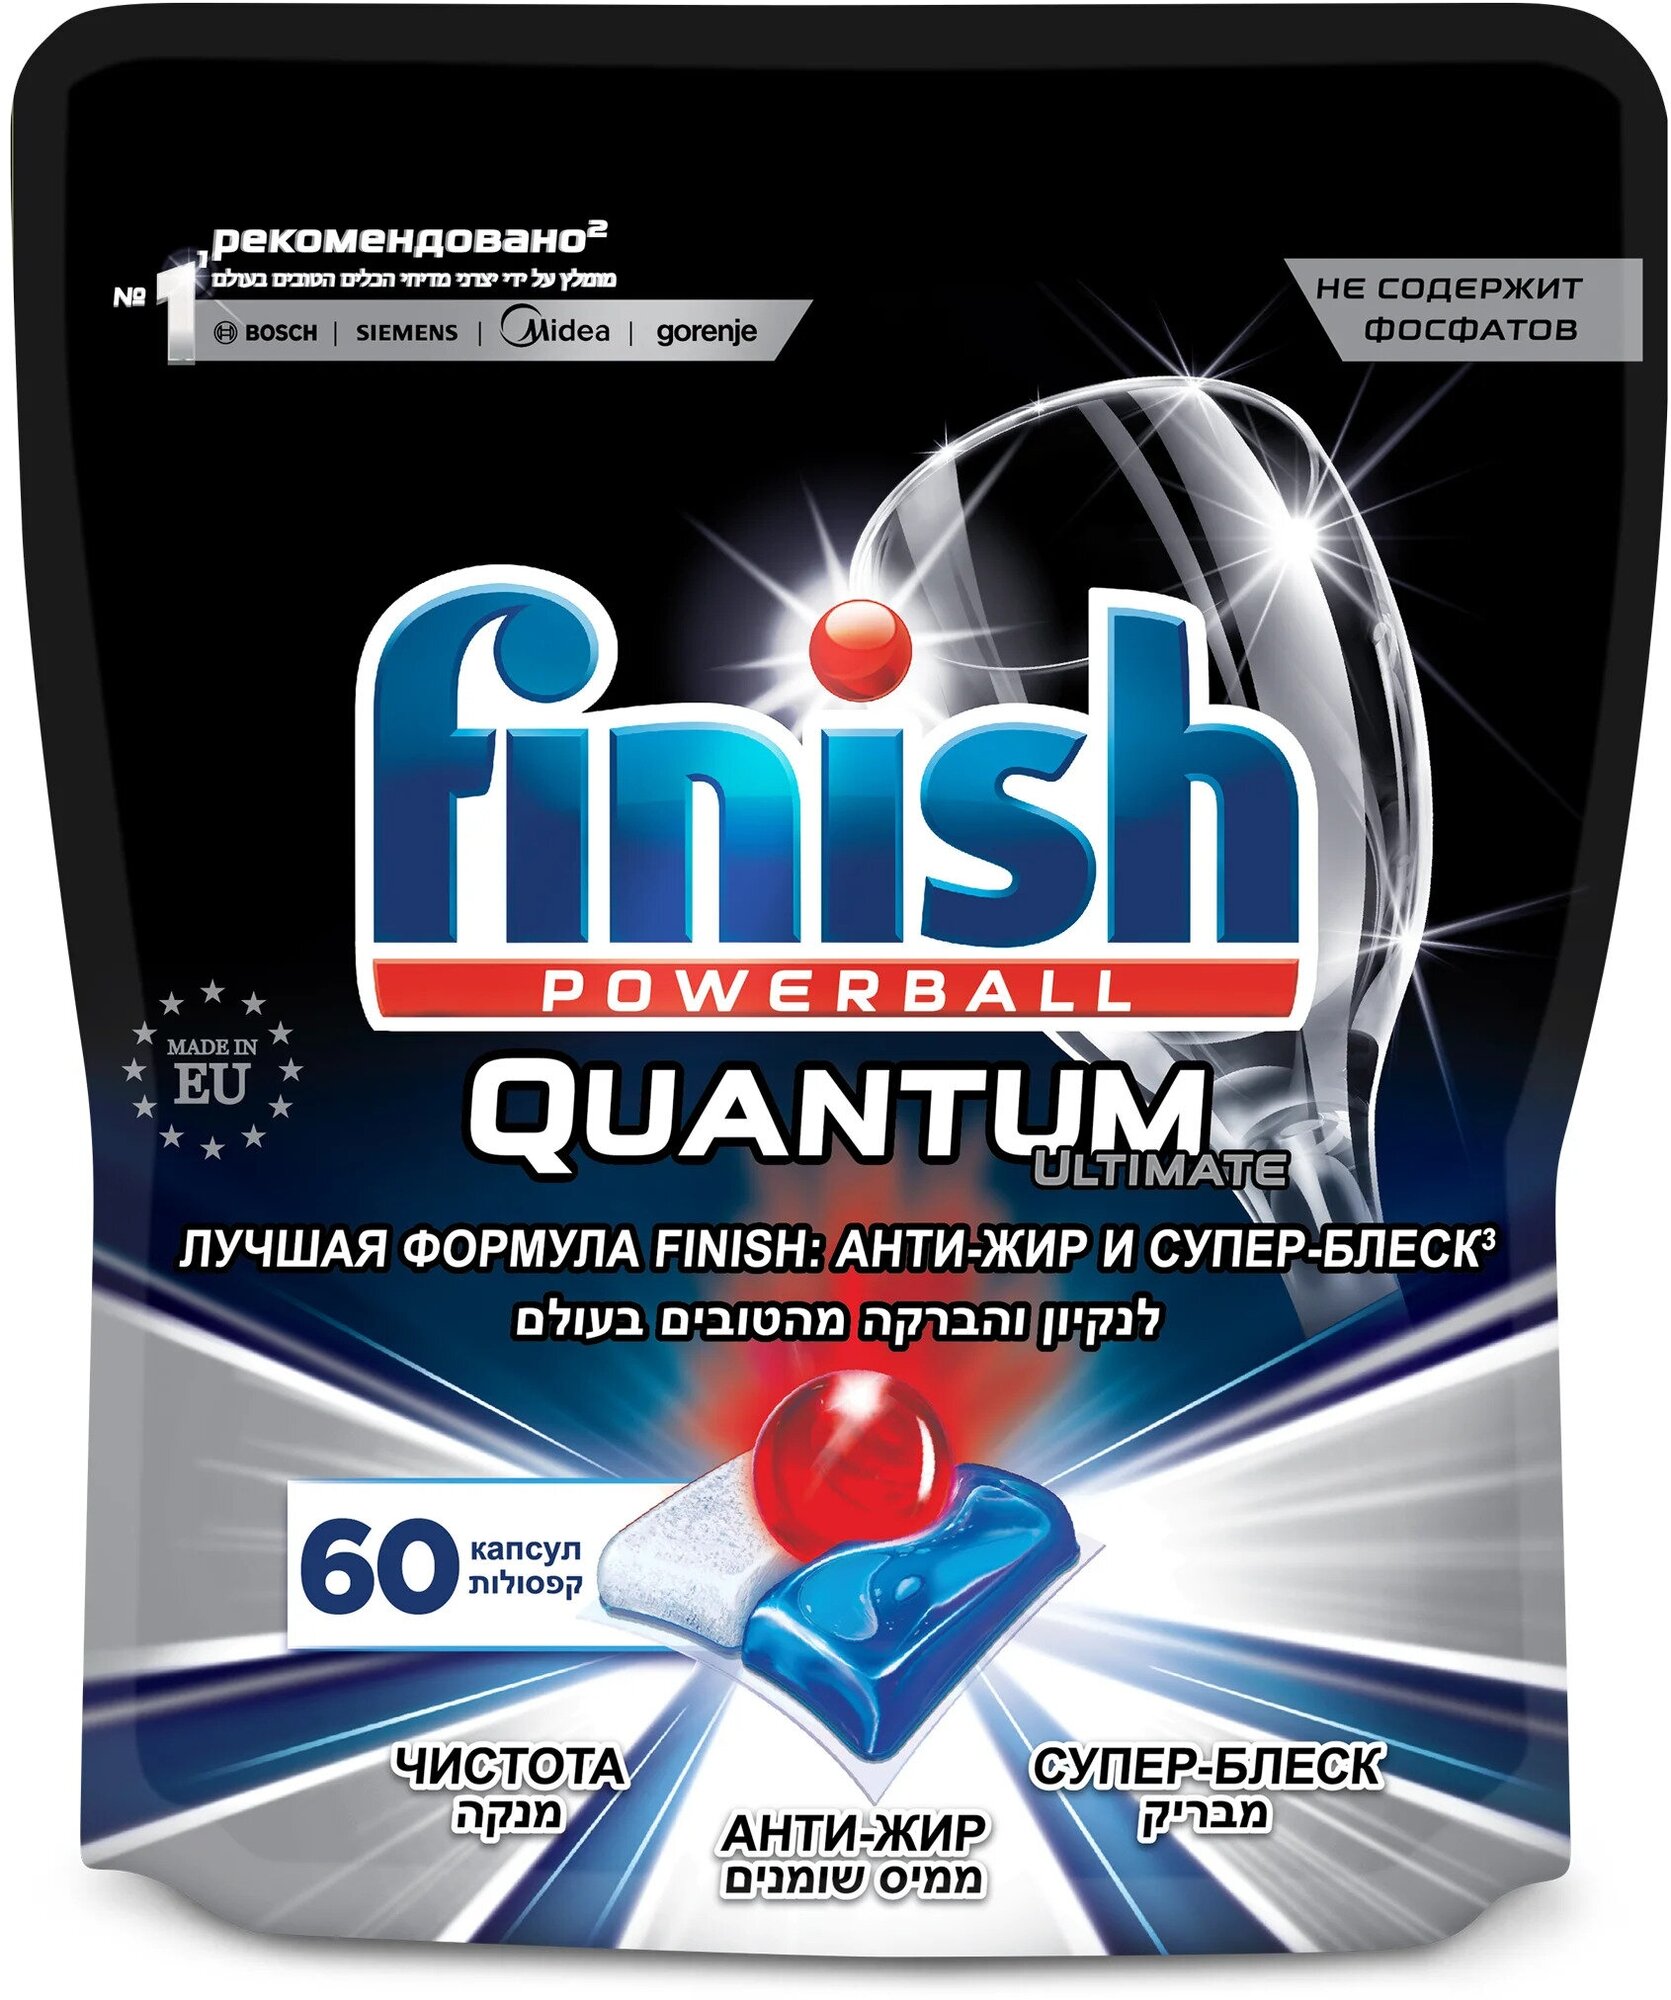 Капсулы для мытья посуды Finish Quantum для посудомоечной машины, таблетки для посудомоечных машин, 60 шт.